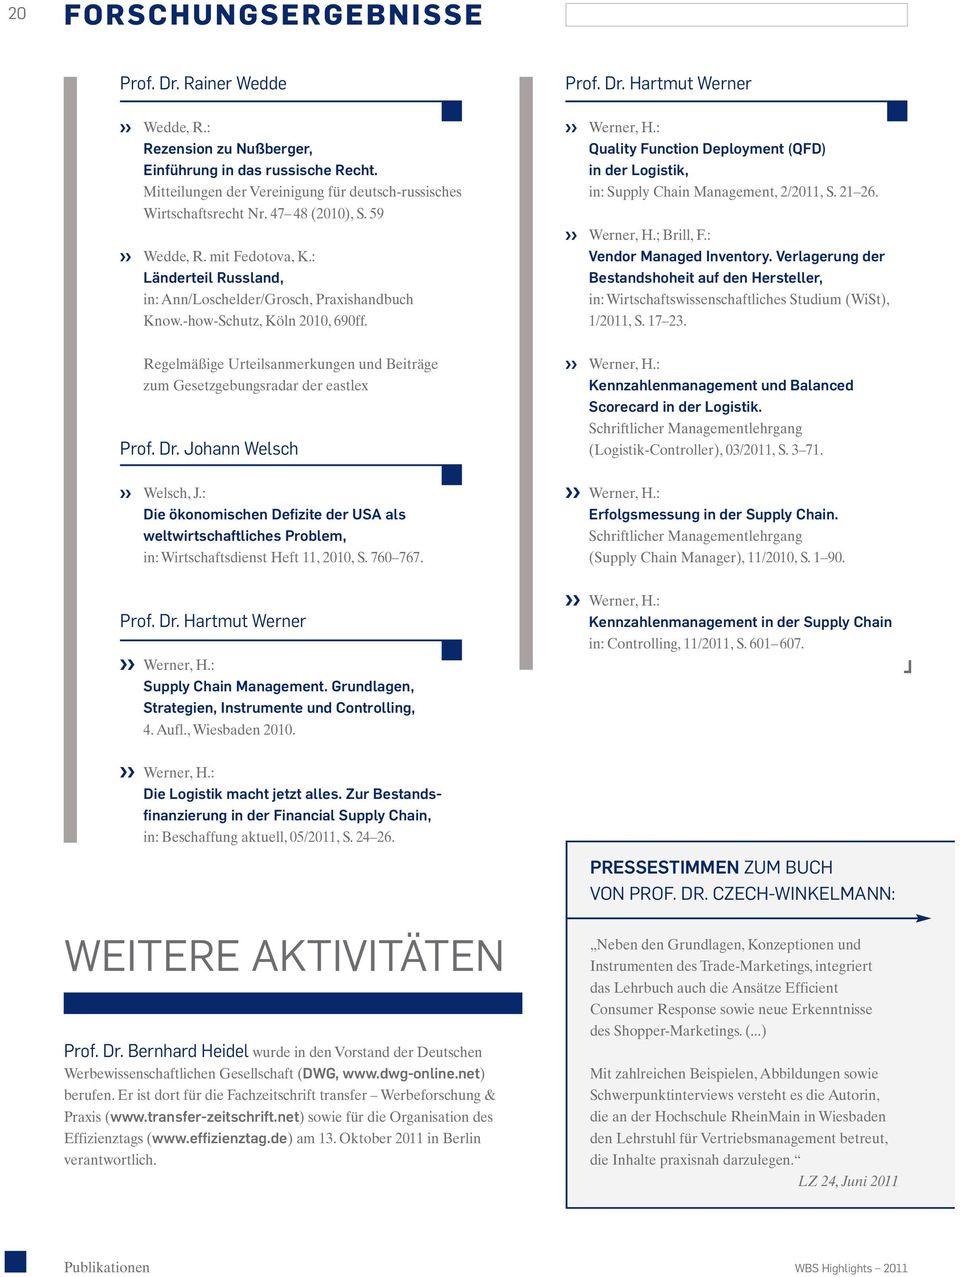 Regelmäßige Urteilsanmerkungen und Beiträge zum Gesetzgebungsradar der eastlex Prof. Dr. Johann Welsch Welsch, J.